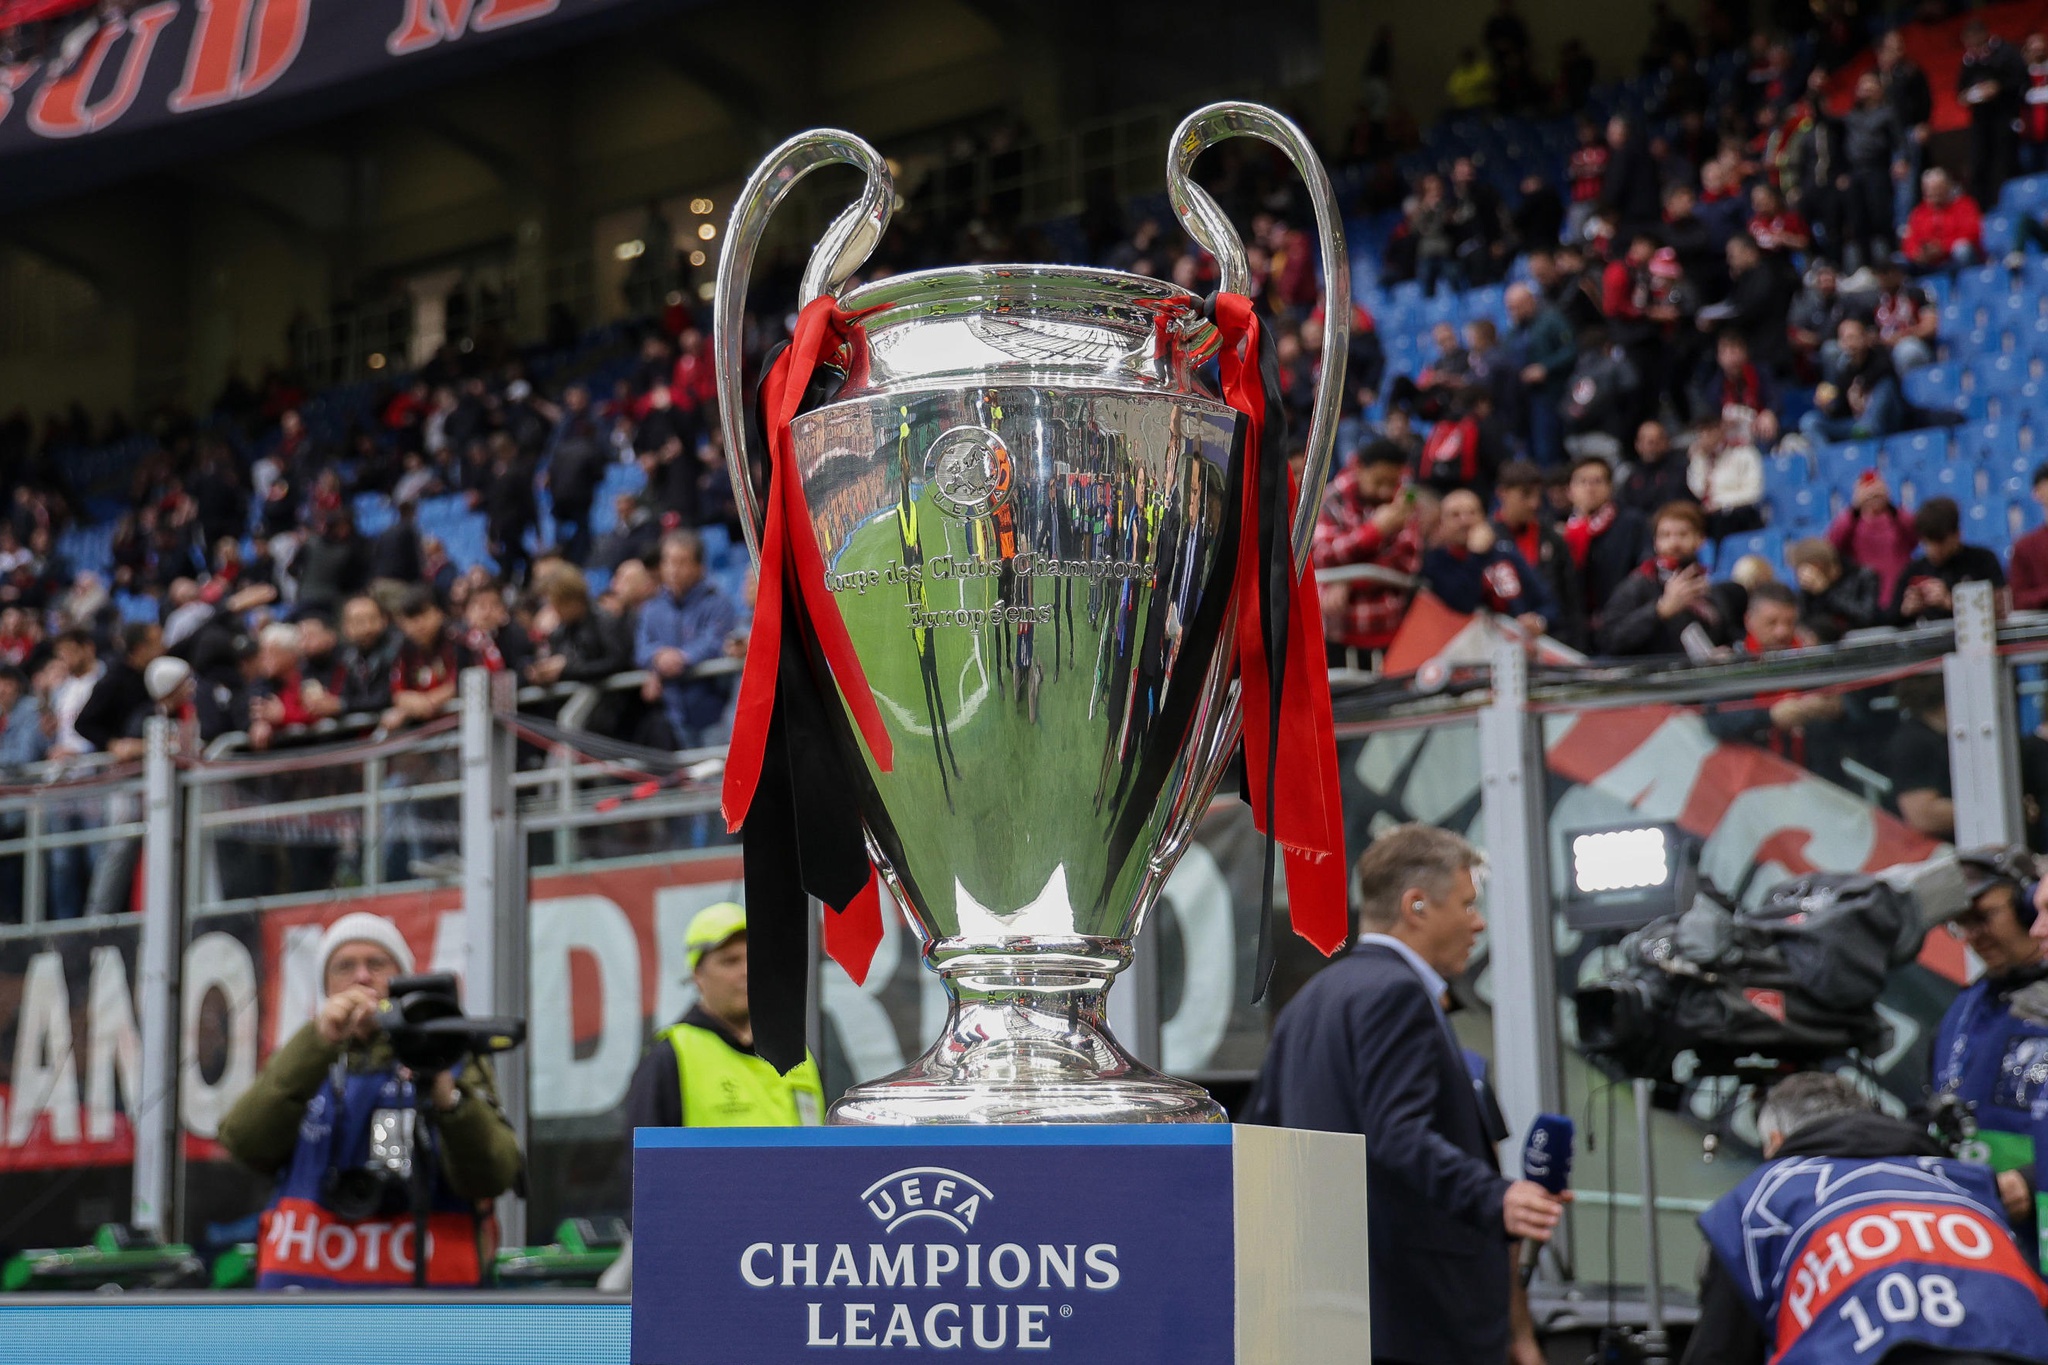 Champions League 2022/23: saiba onde ver os jogos da semana